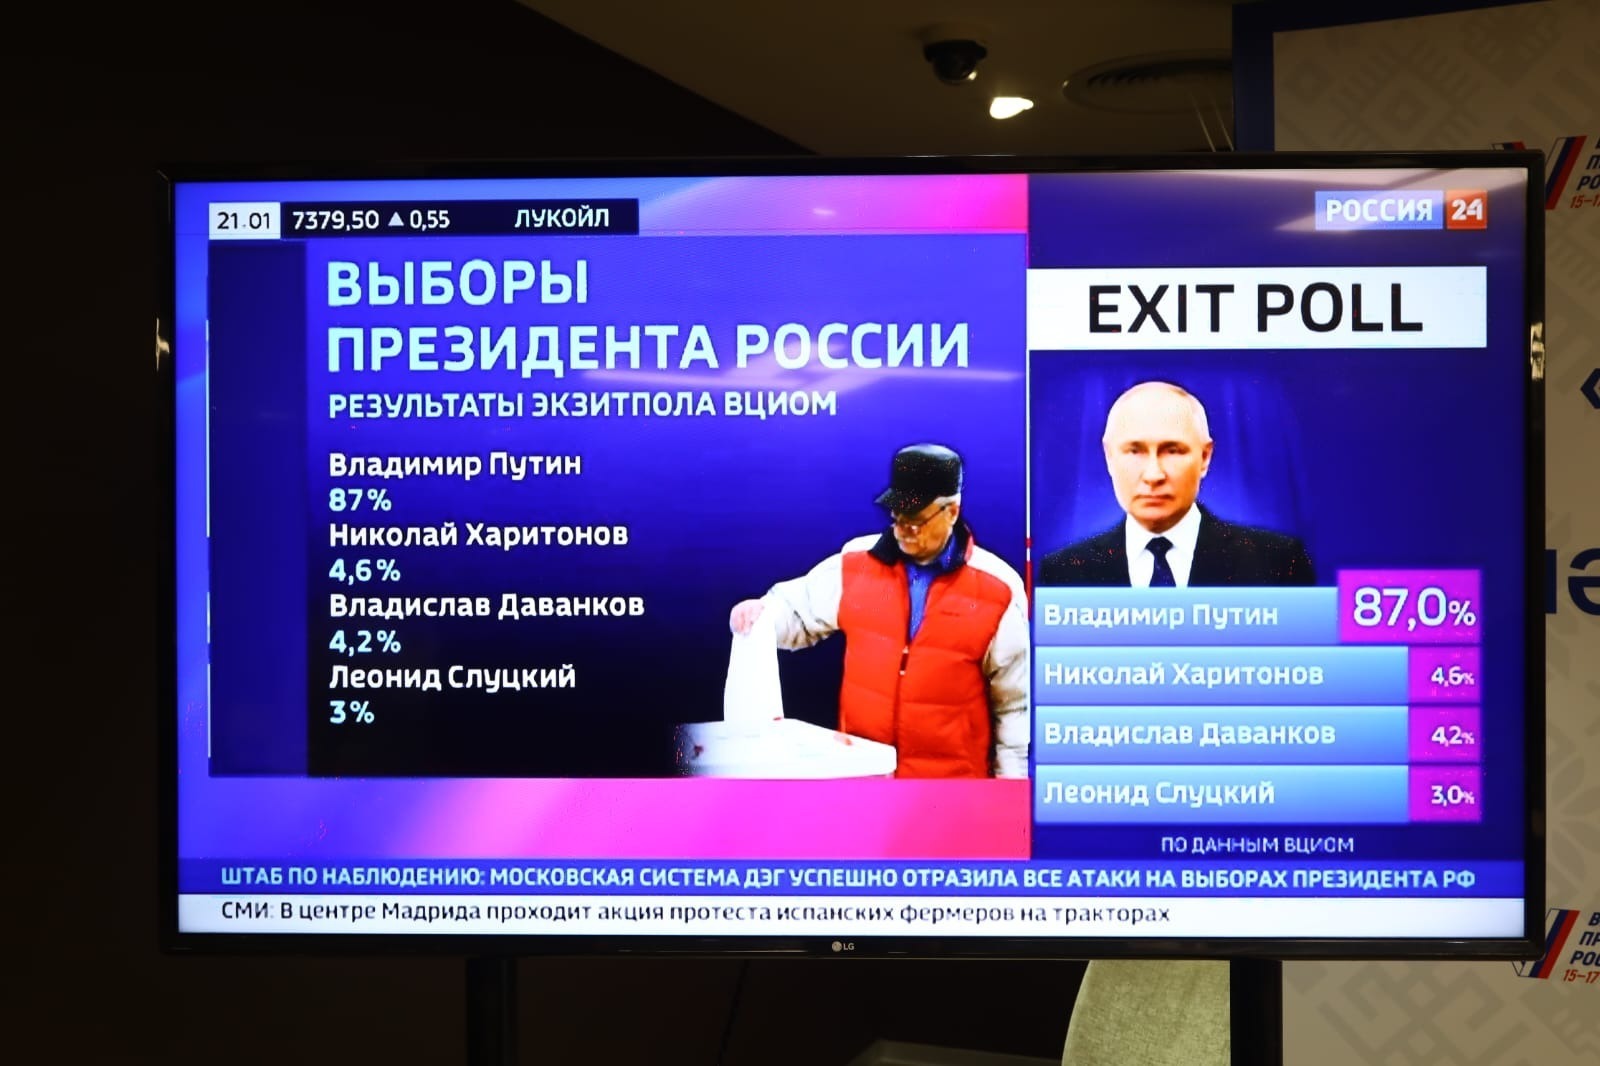 Владимир Путин 87% тавыш җыйган